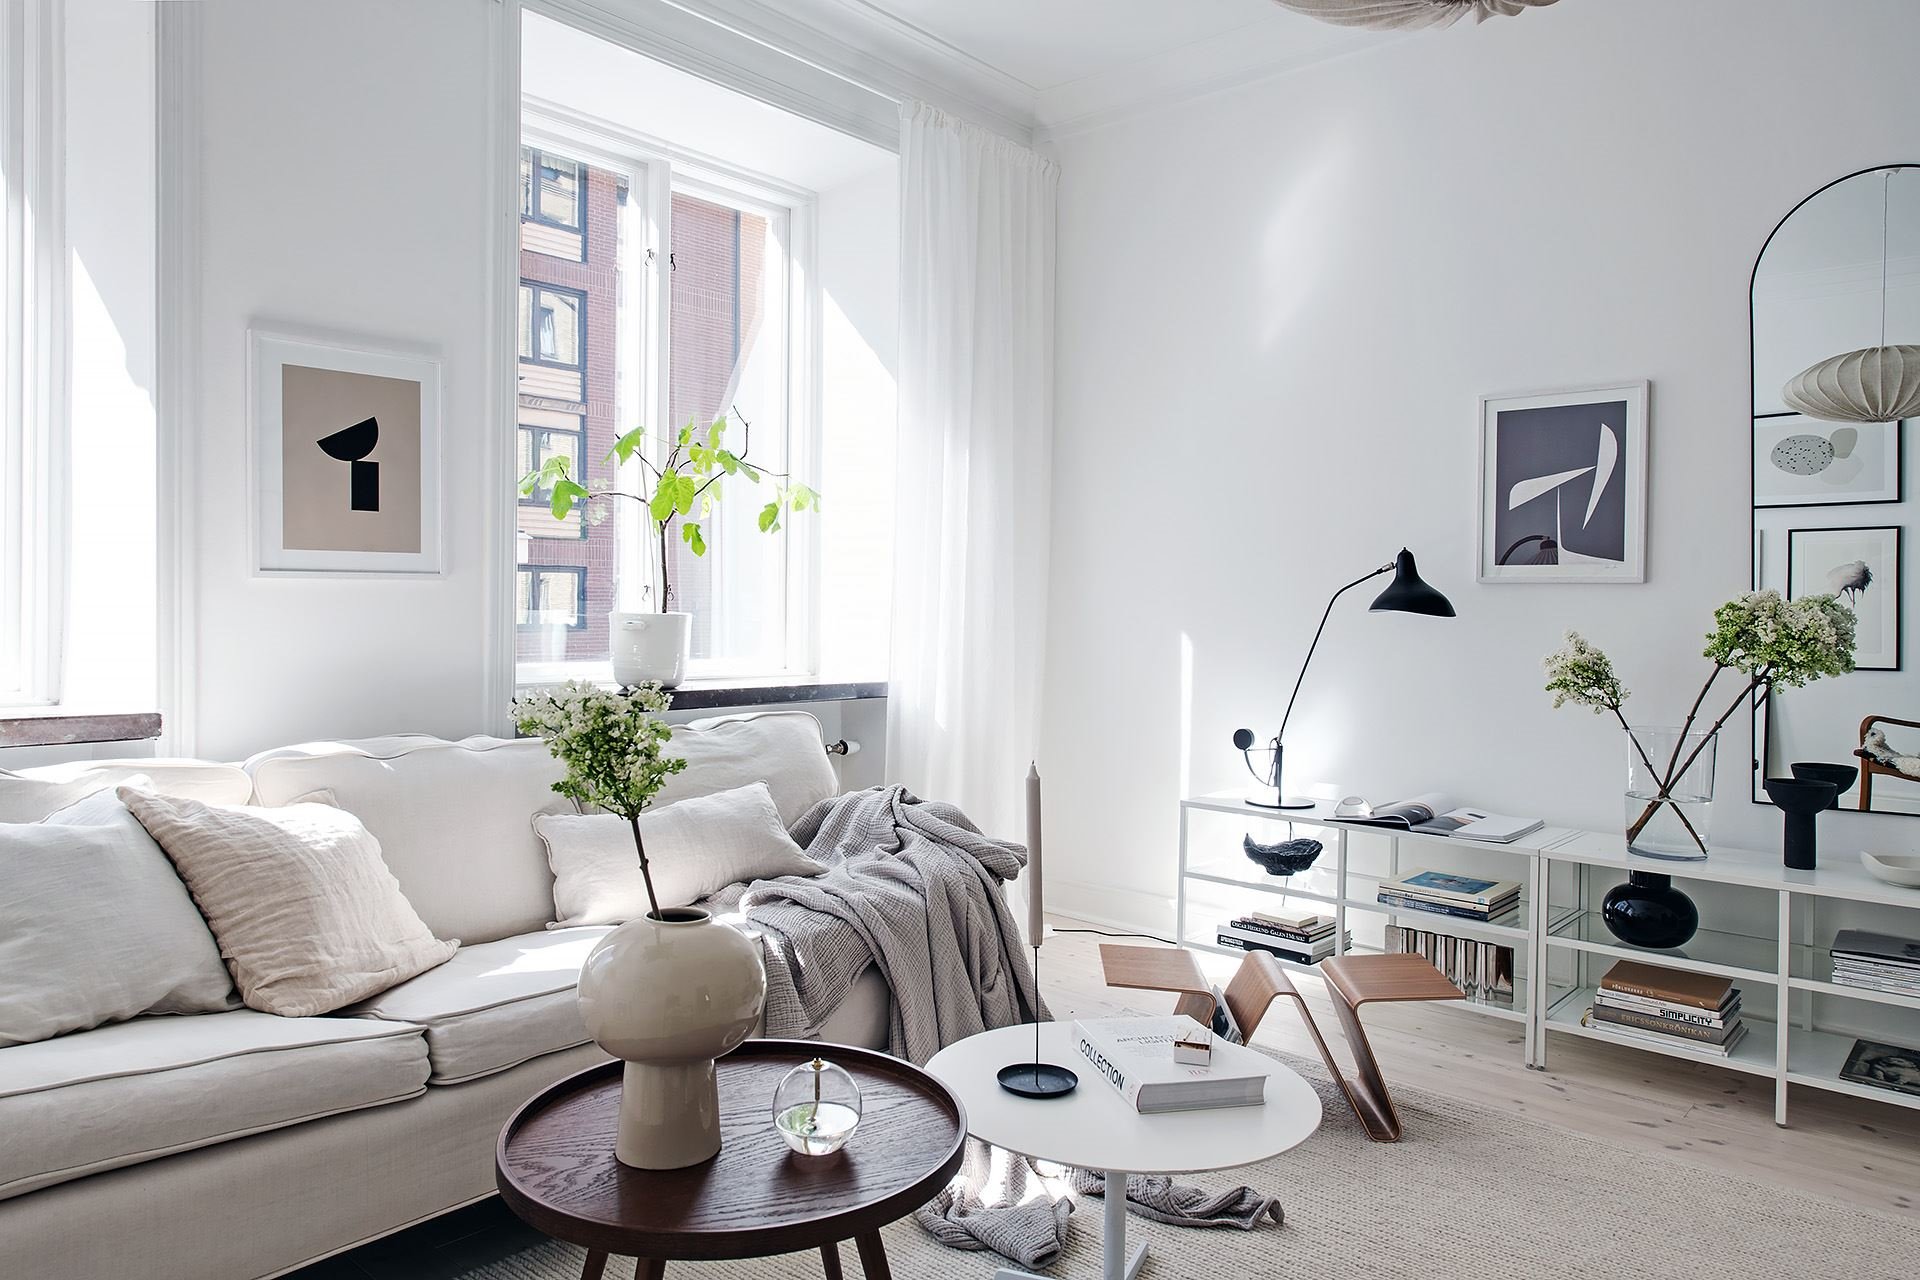 Casa con decoracion de interiores de estilo nordico salon con sofa blanco